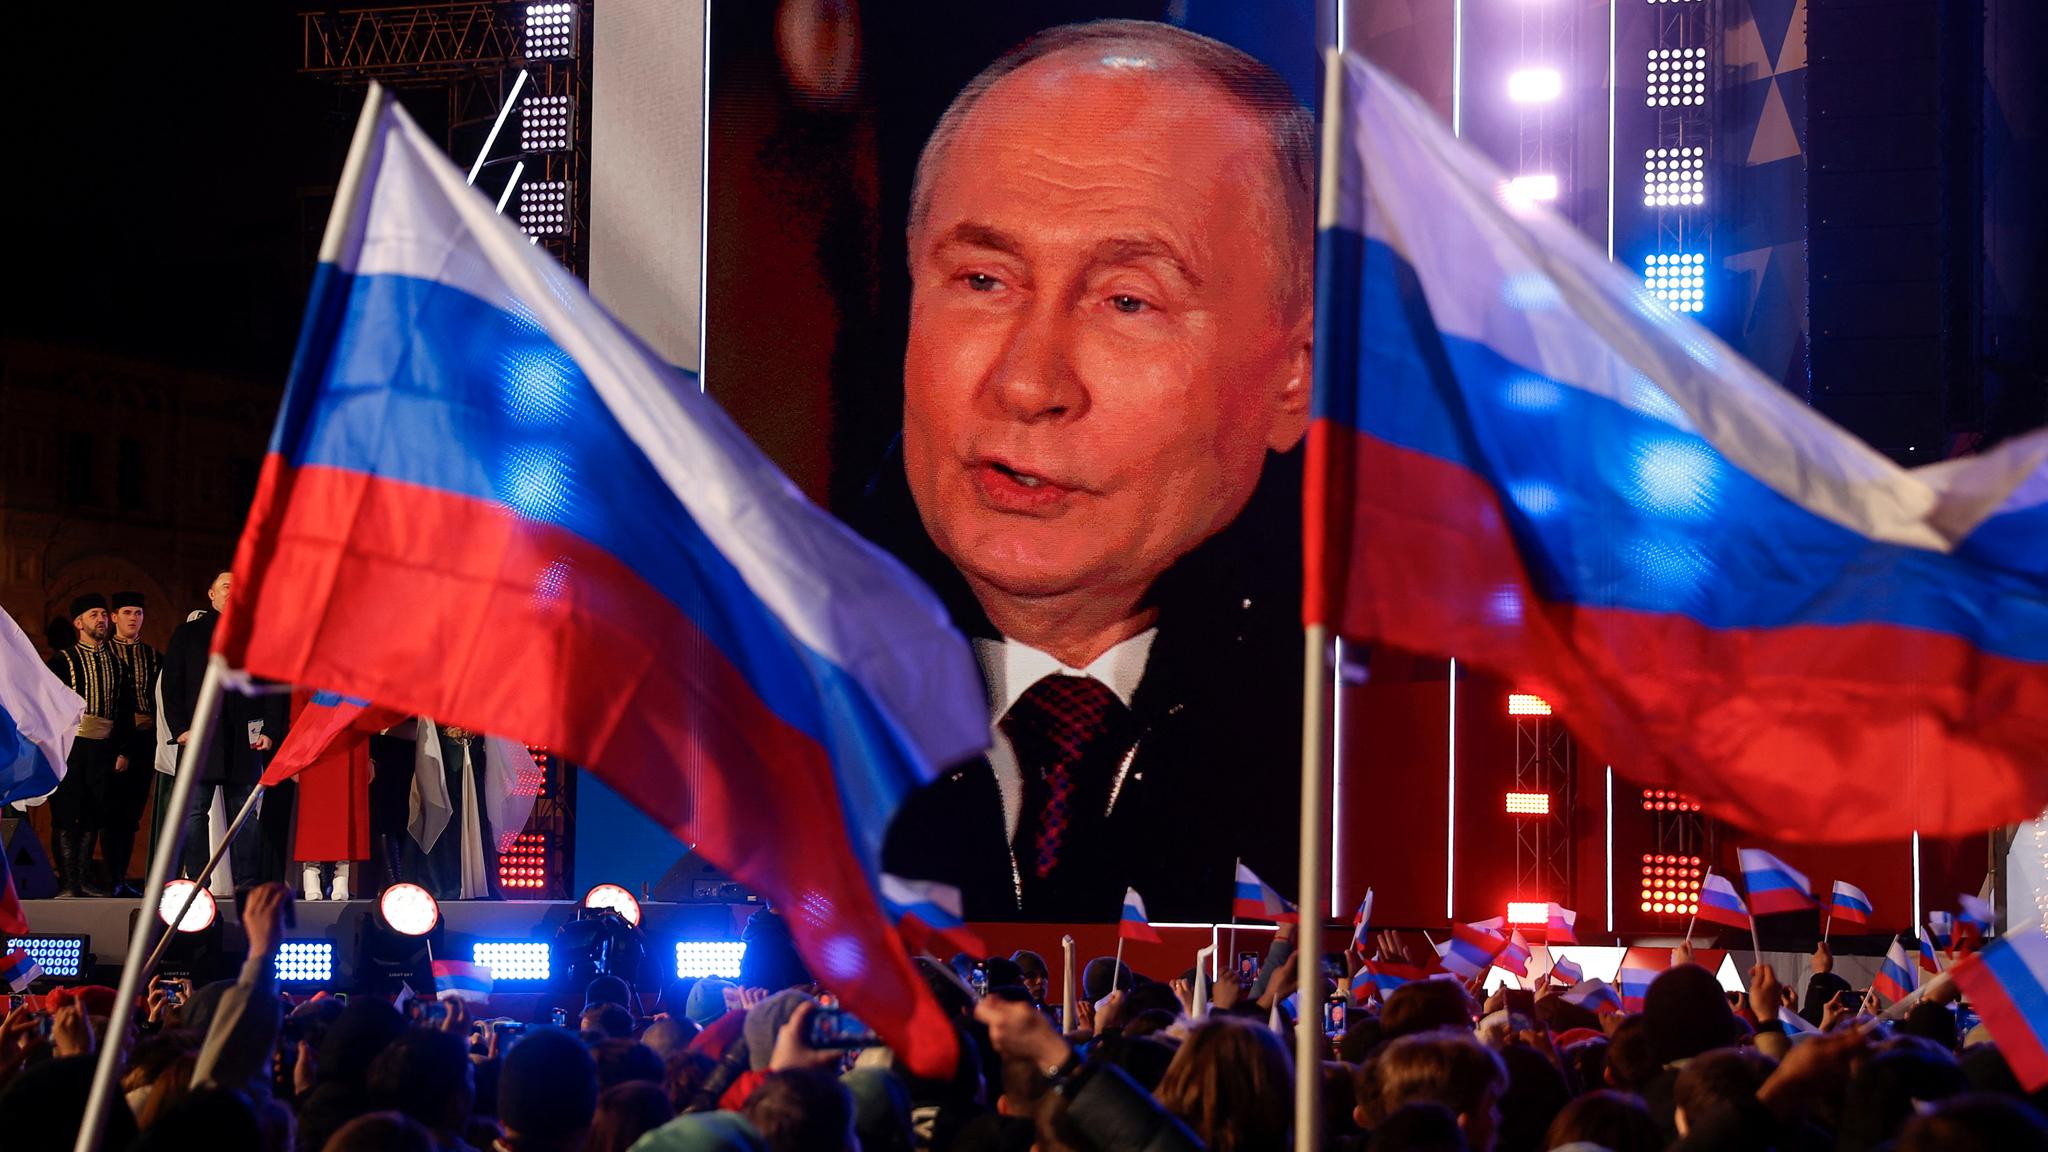 Nei, de fleste russere i Norge stemte ikke på Putin